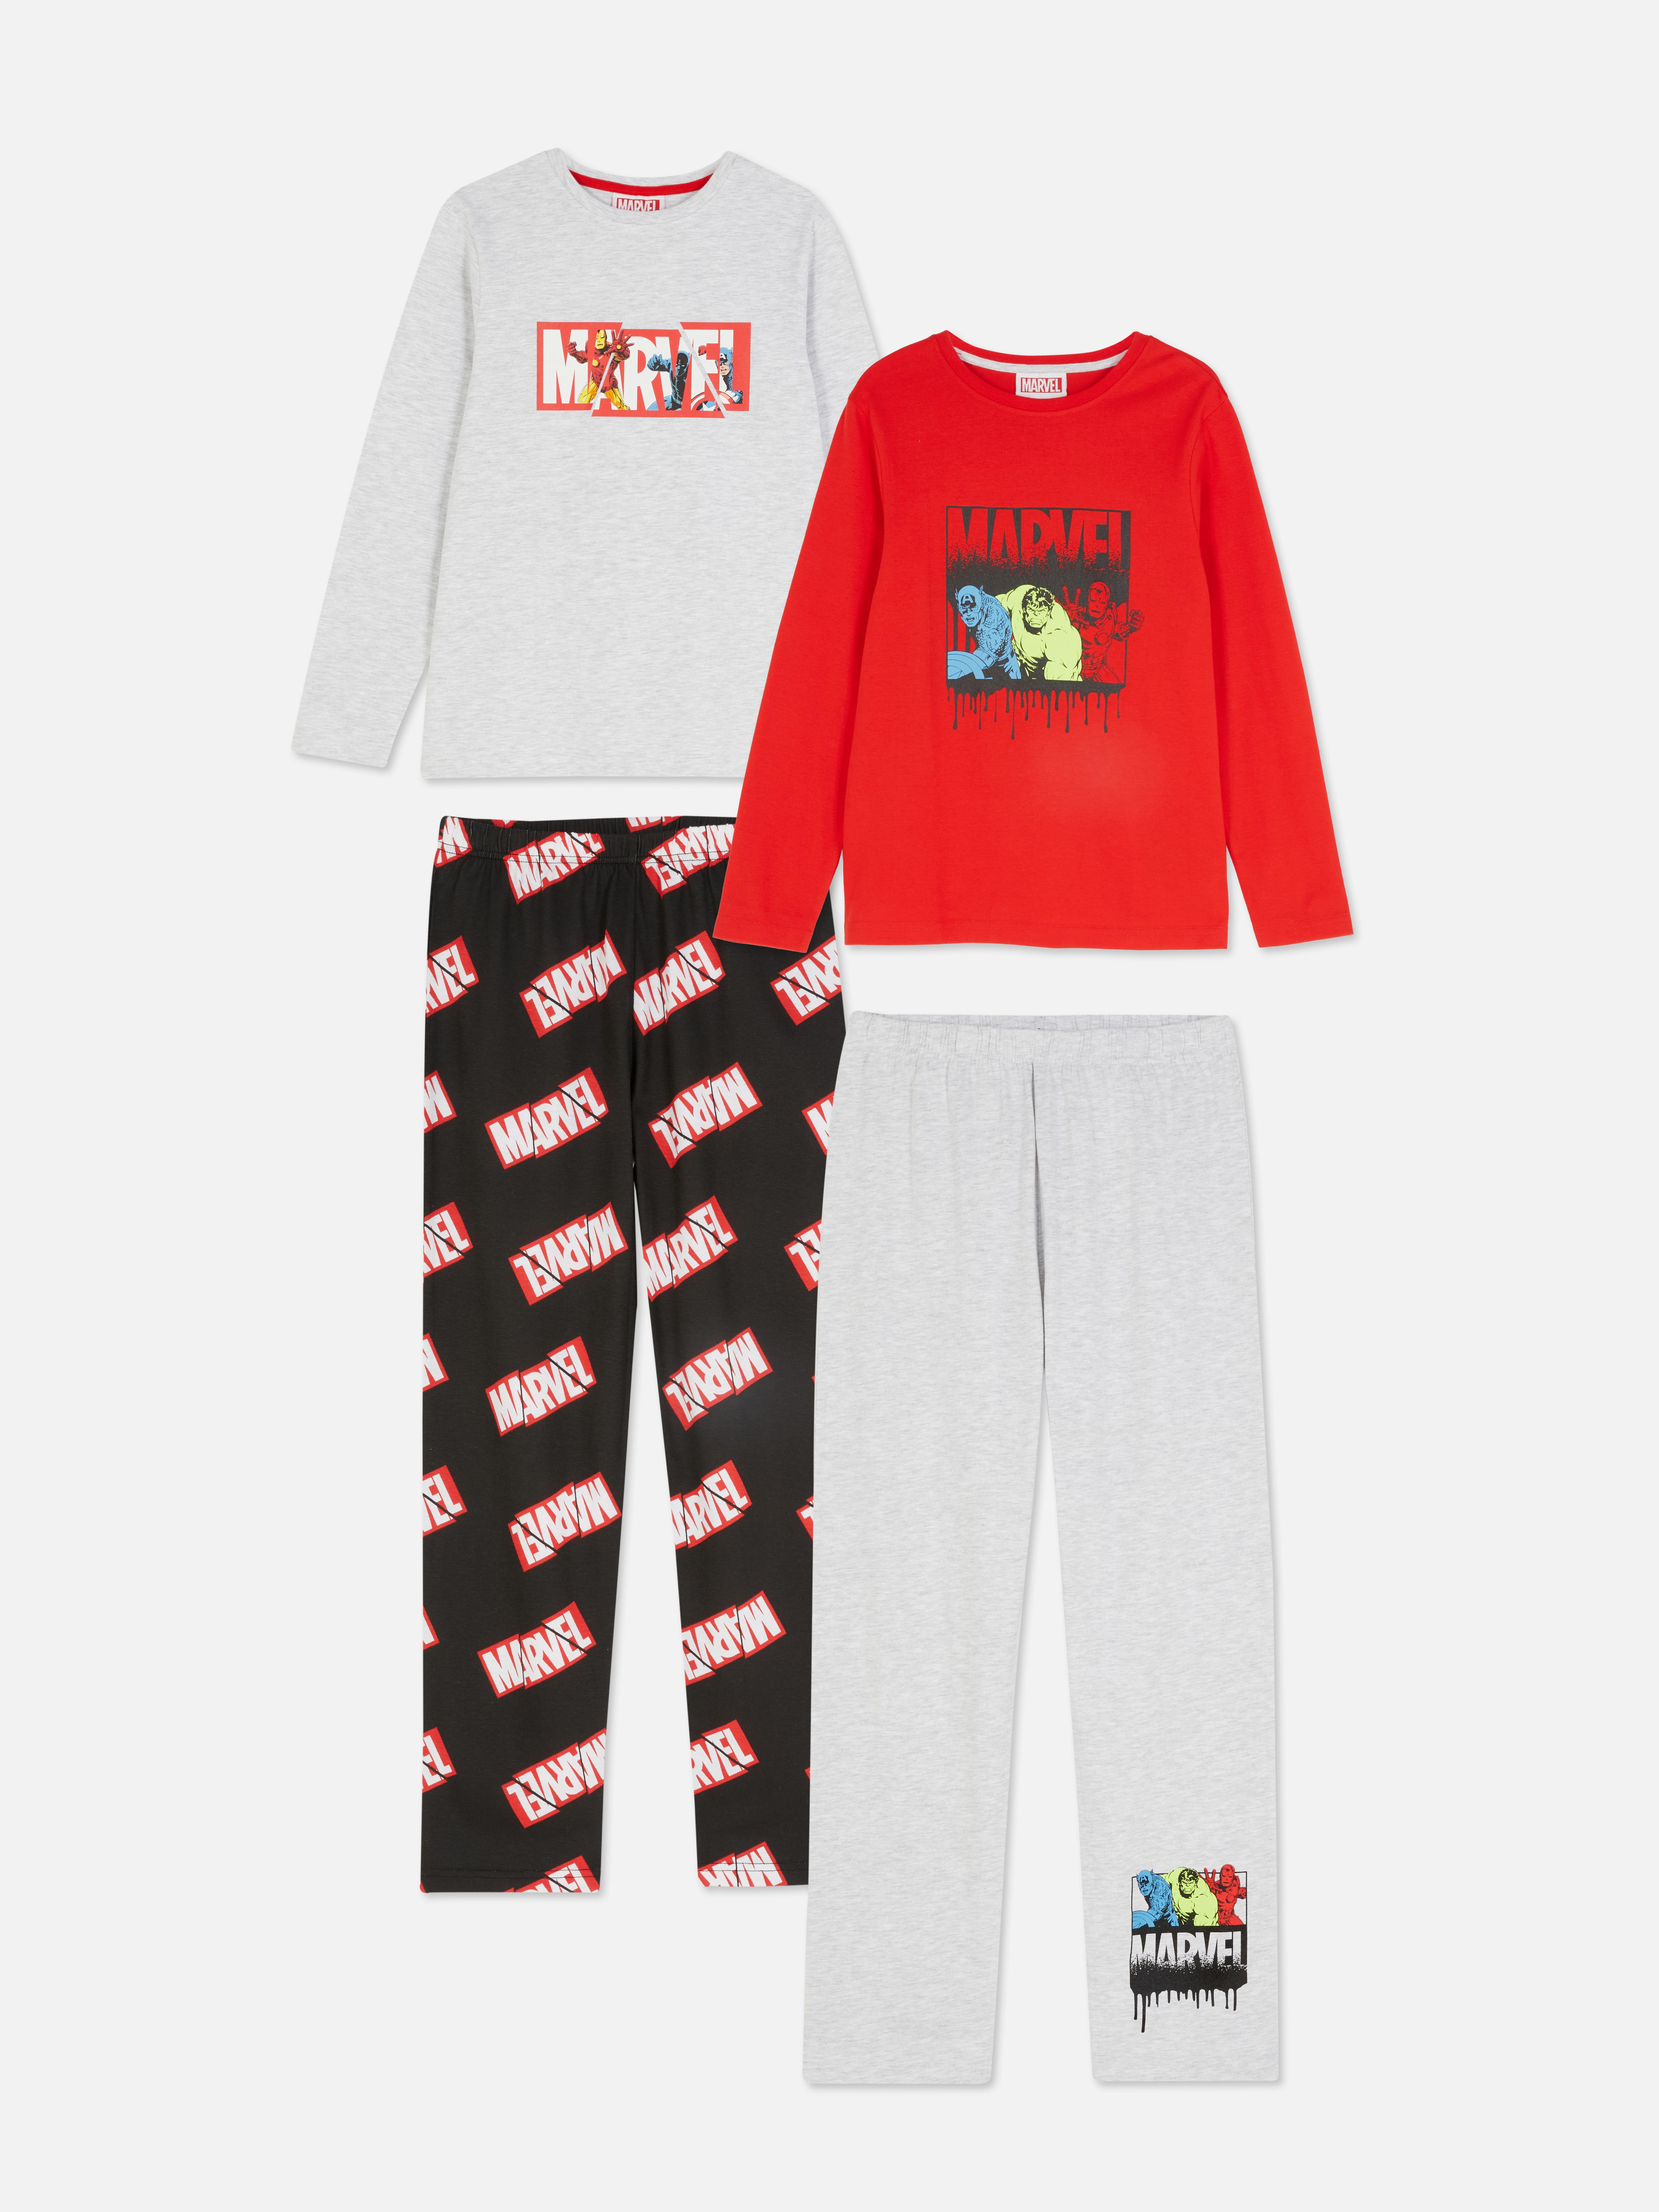 Pyjama PSG - Primark - 7 ans